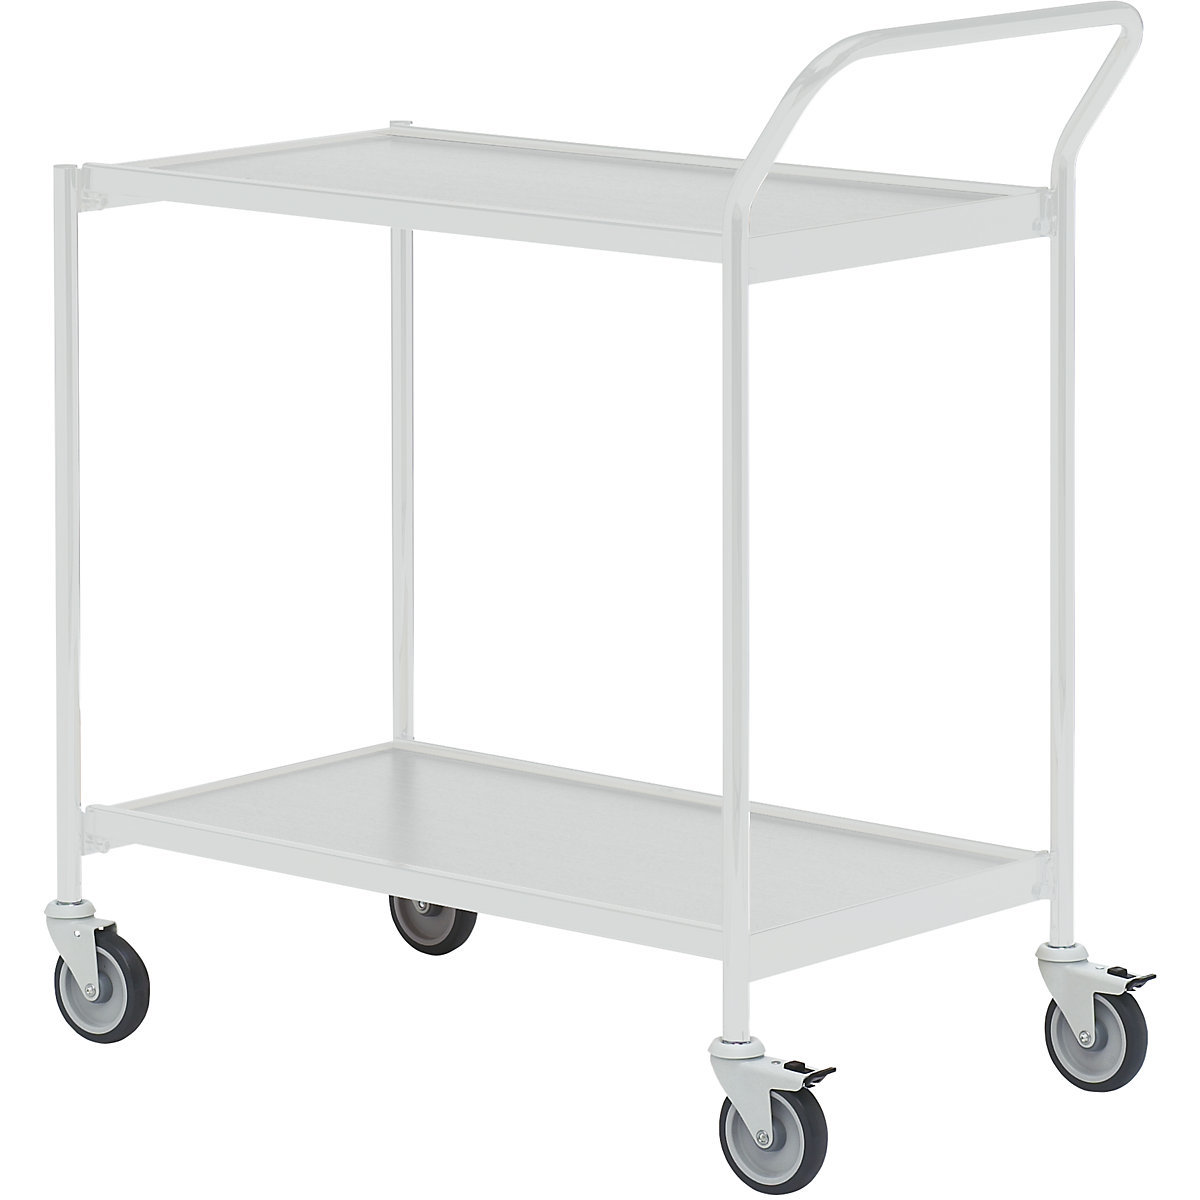 Stolový vozík – HelgeNyberg, 2 poschodia, d x š 1000 x 420 mm, šedá/šedá, od 5 ks-46